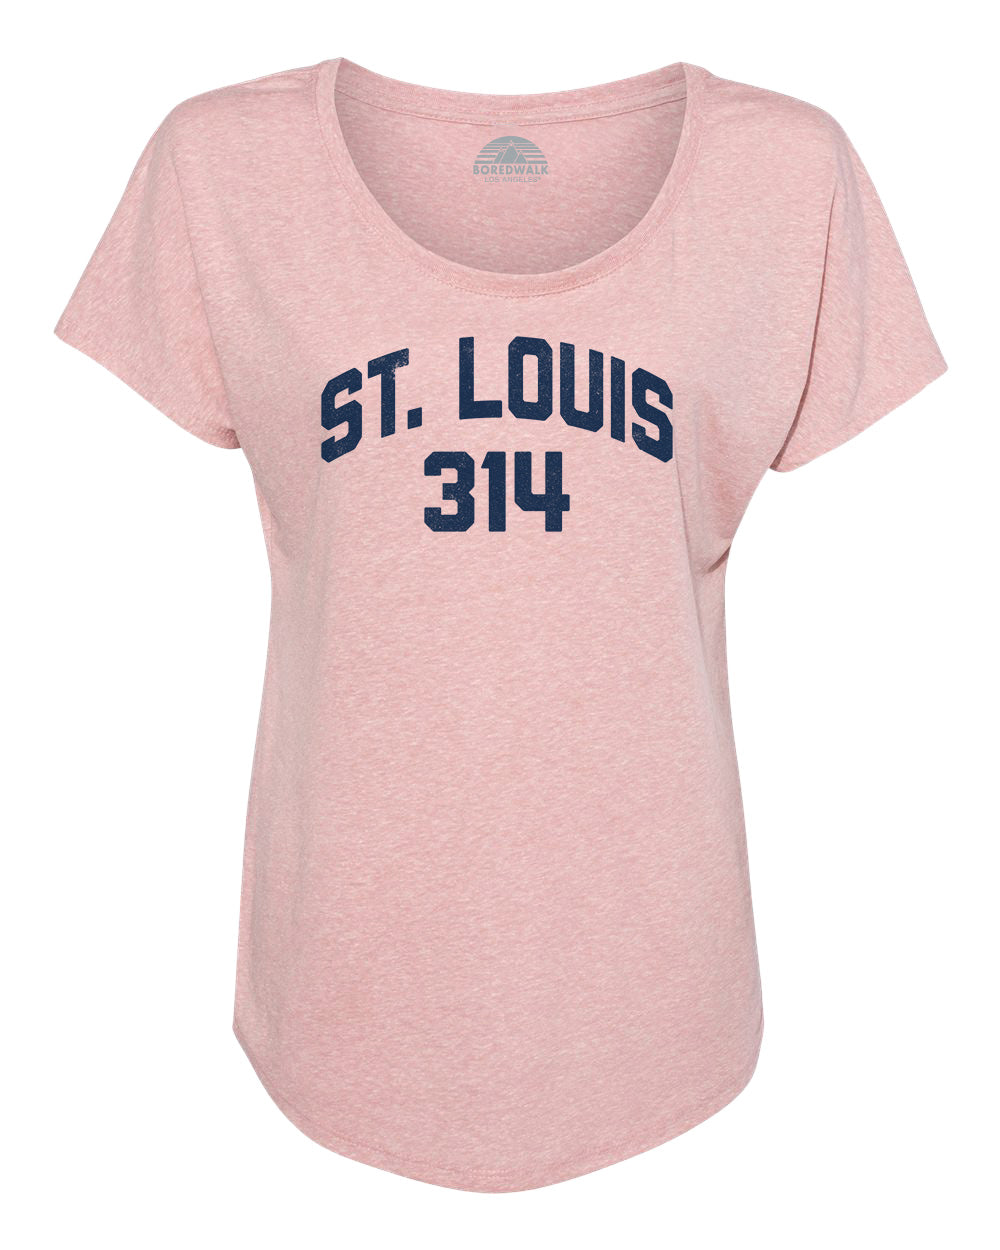 Women's St Louis 314 Area Code Scoop Neck T-Shirt